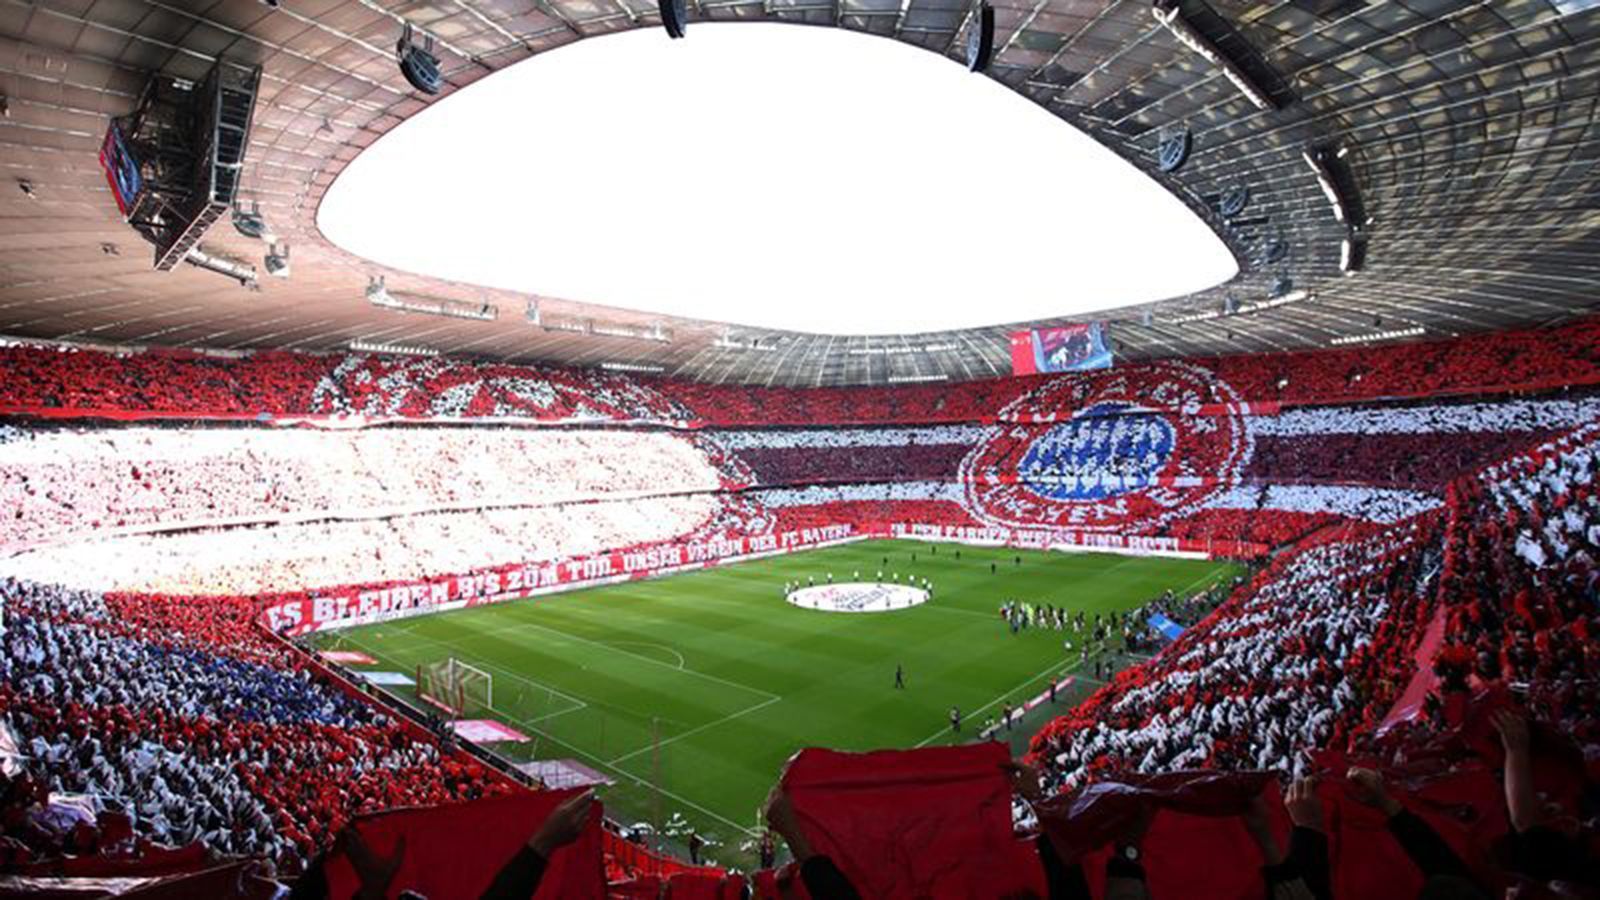 
                <strong>Bayern-Fans feiern Vereins-Geburtstag</strong><br>
                Zum 120. Geburtstag des FC Bayern München tauchten die Fans des amtierenden Meisters die Allianz Arena in die Vereinsfarben. Als die Spieler den Rasen betraten, war ein Schriftzug zu lesen, auf dem stand: "Wie seit über 100 Jahren wird es bleiben bis zum Tod. Unser Verein der FC Bayern in den Farben Weiß und Rot."
              